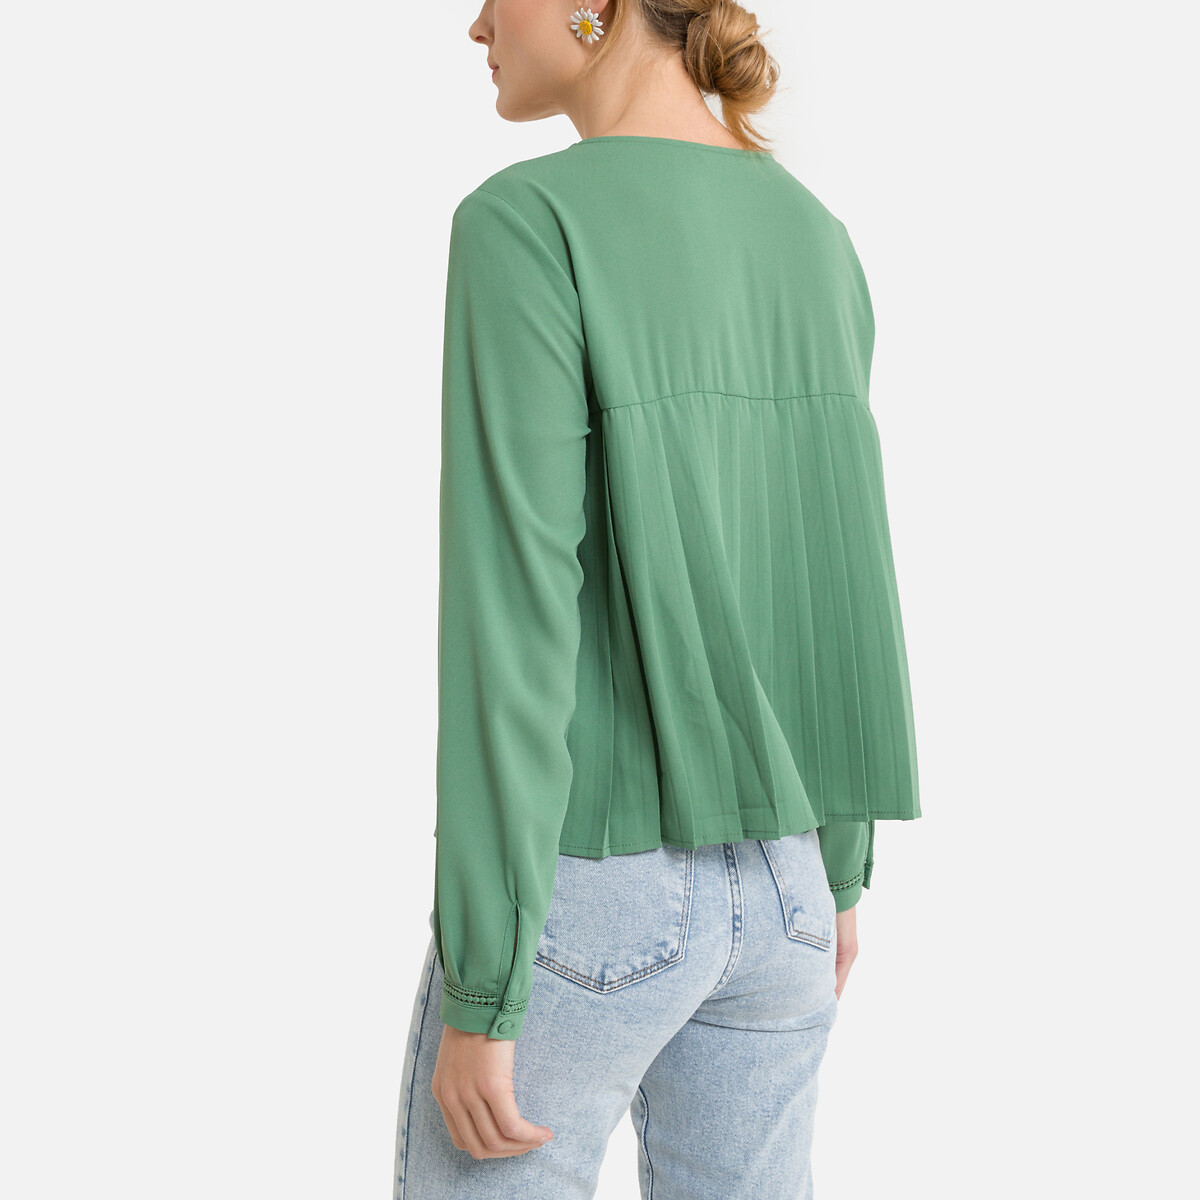 Блузка ONLY Короткая с пуговицами и v-образным вырезом S зеленый, размер S - фото 4